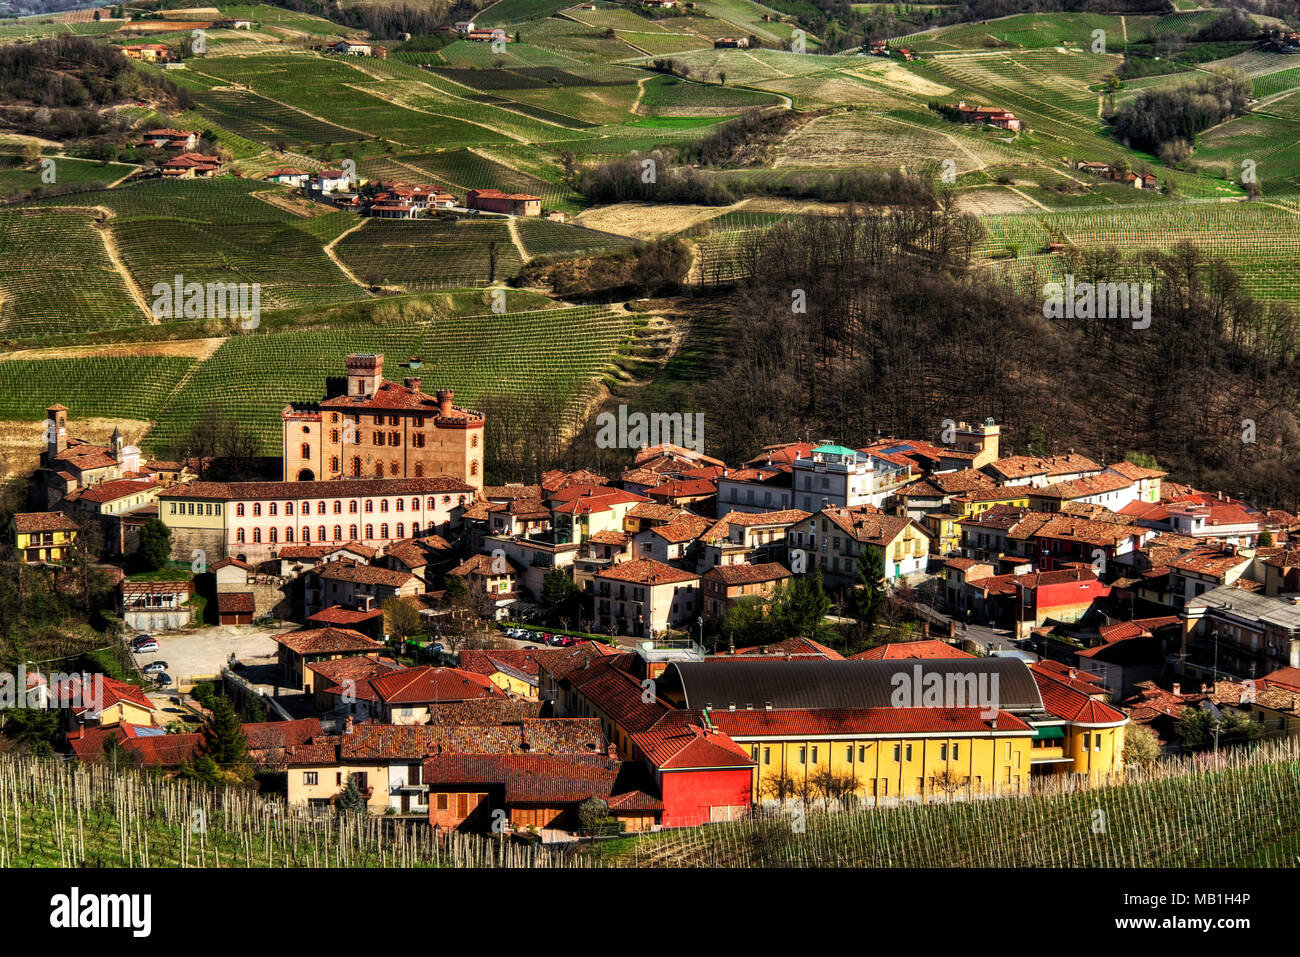 La ville de Barolo, avec le château Falletti, parmi les vignes, au centre de la zone de l'homonyme vin. Banque D'Images